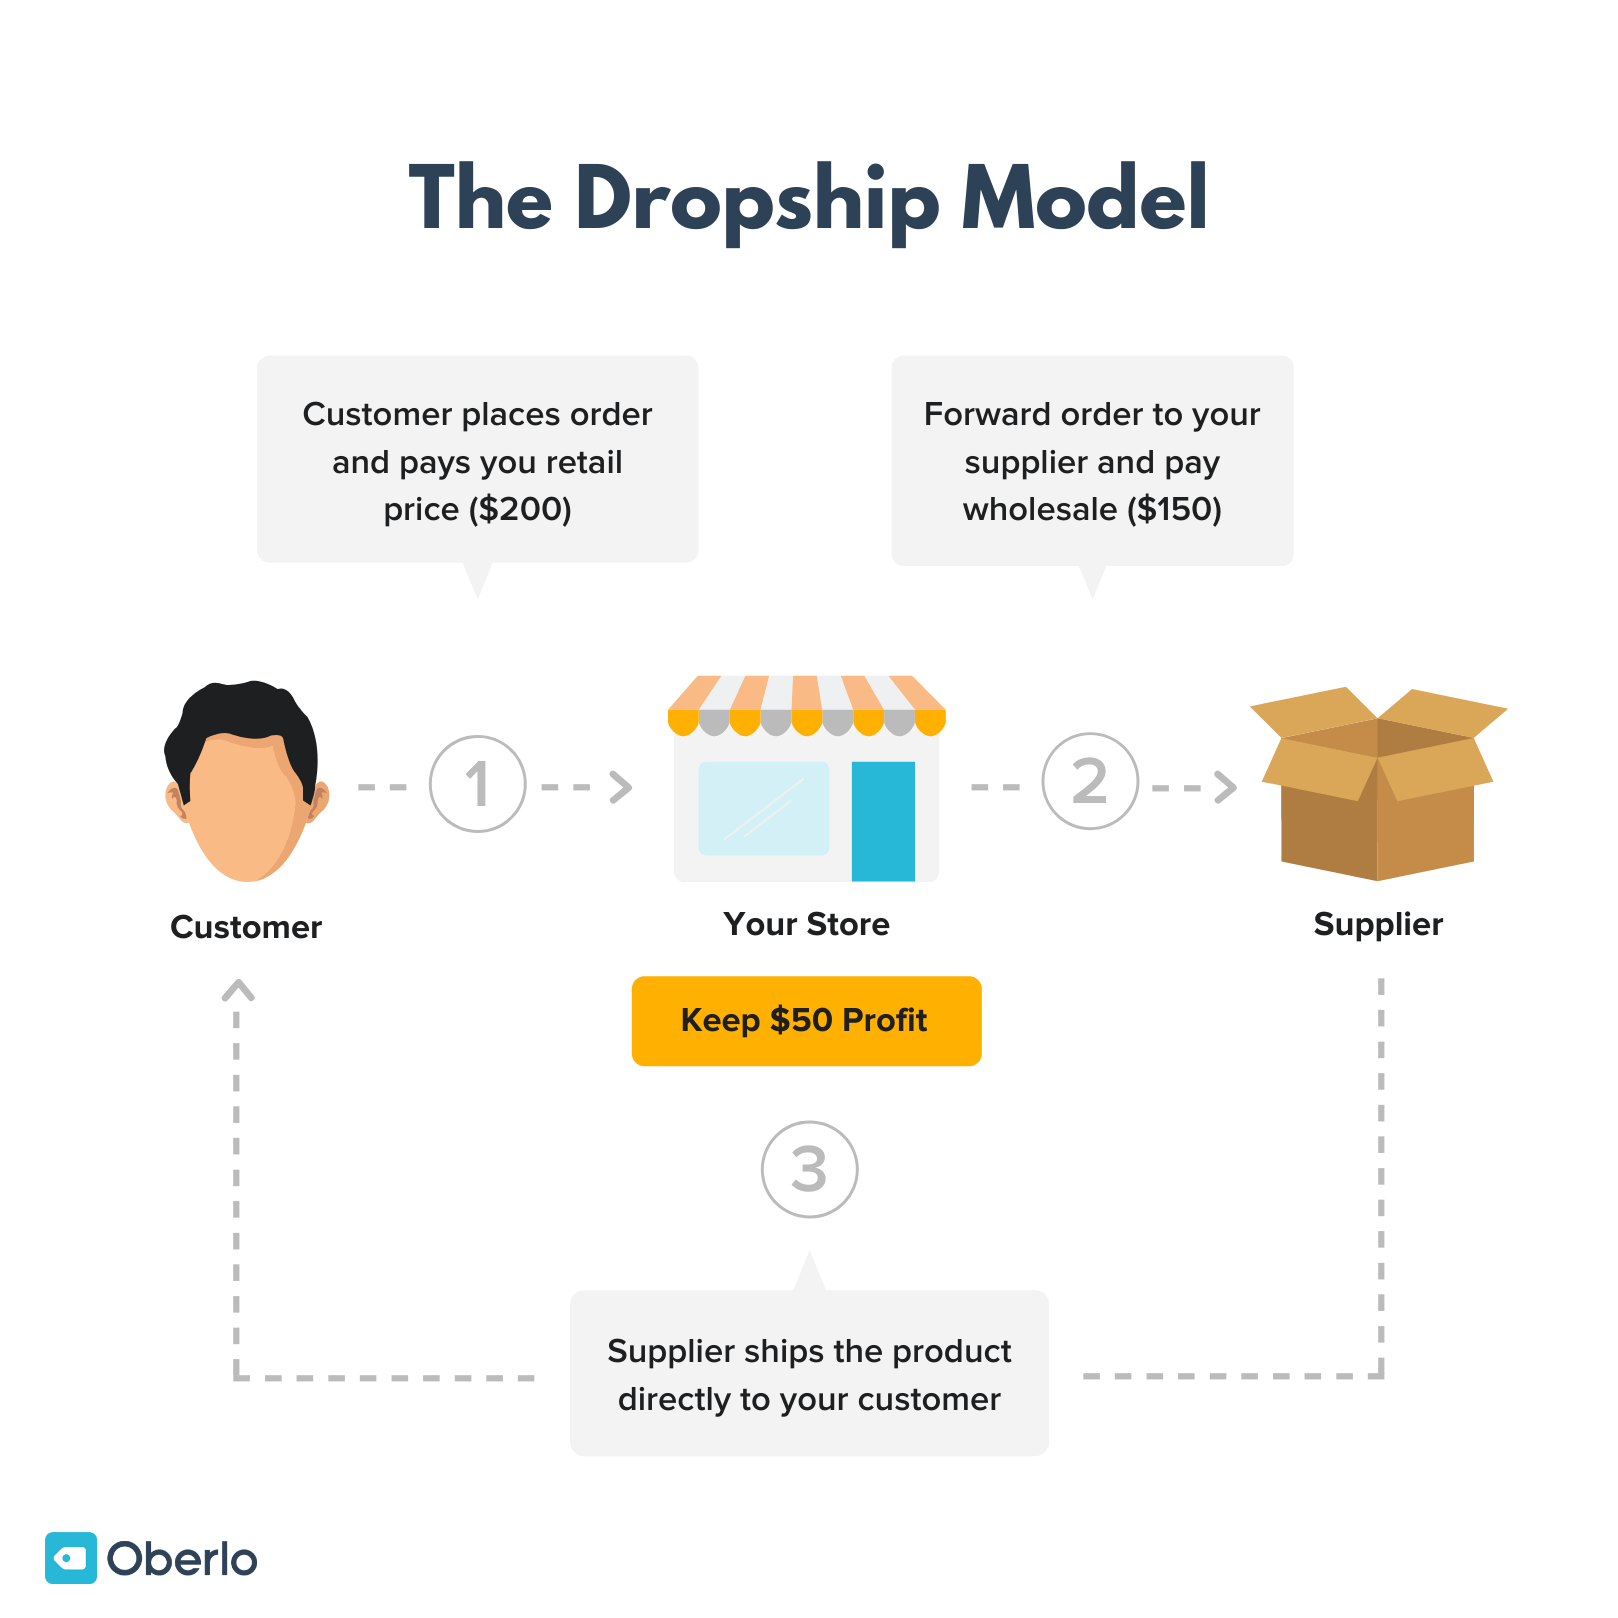 Imagen que muestra el modelo de negocio de dropship